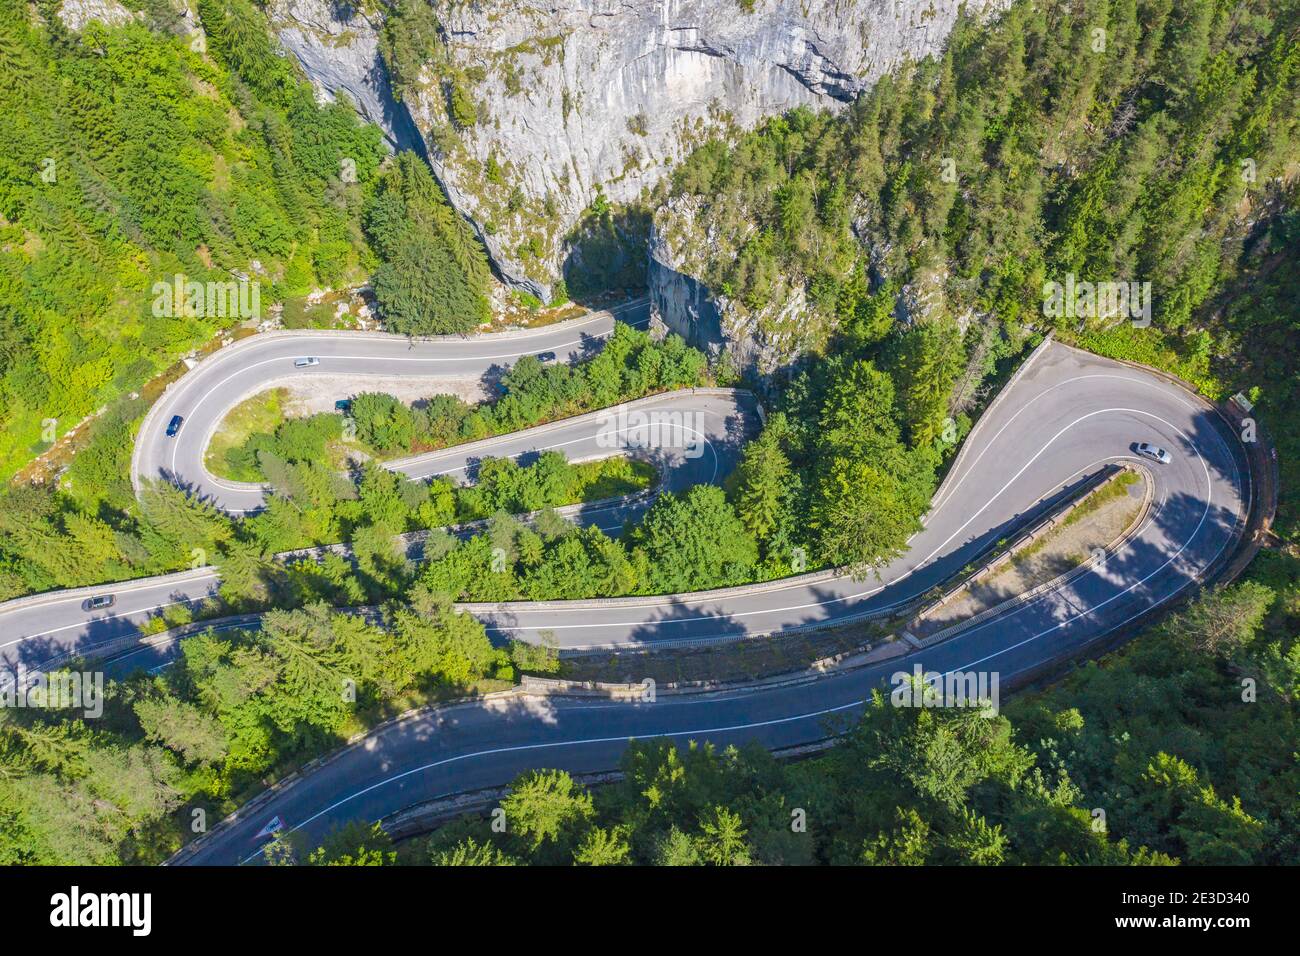 Route de montagne sinueuse vue d'en haut dans les Carpates roumains. La gorge de Bicaz est un canyon dans le nord-est de la Roumanie et a été excisée par l'eau o Banque D'Images